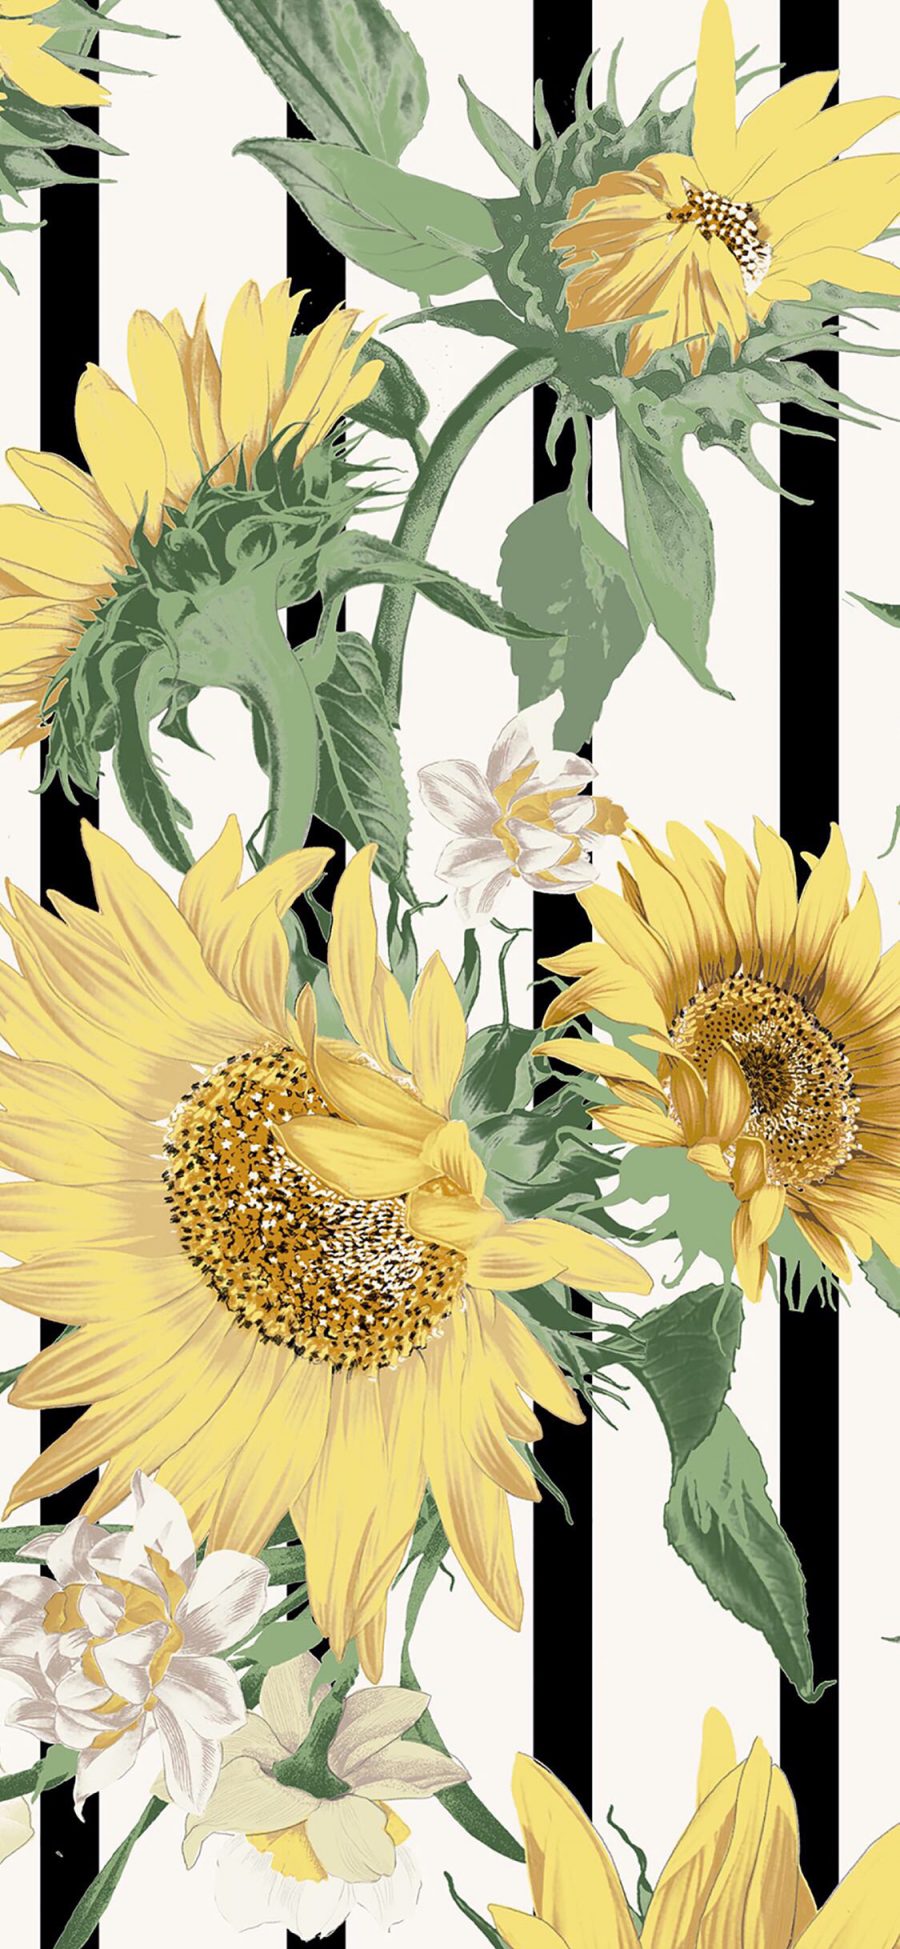 [2436×1125]插图 向日葵 白色鲜花 苹果手机动漫壁纸图片